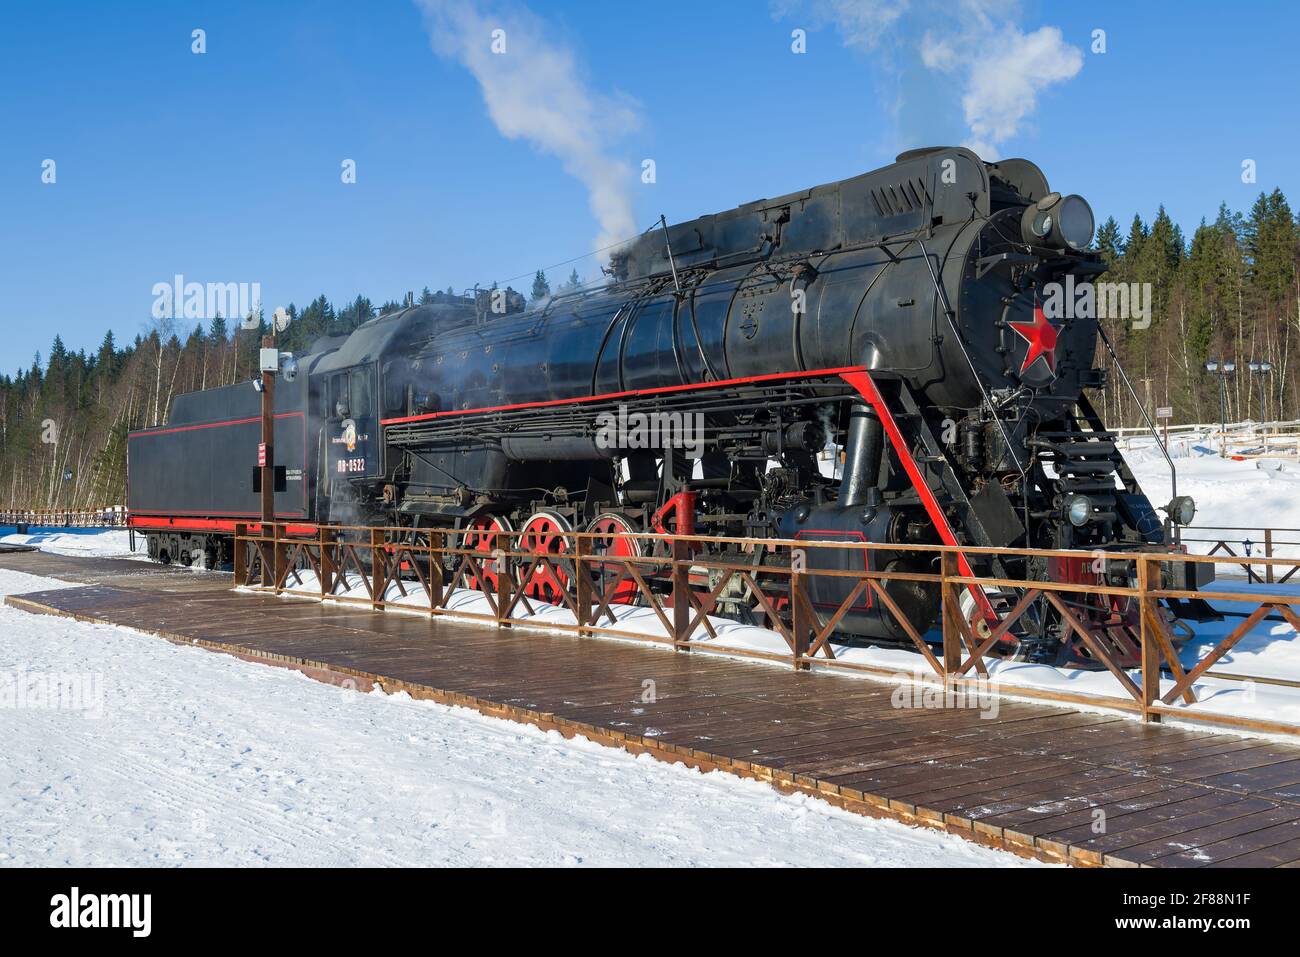 RUSKEALA, RUSSIE - 10 MARS 2021 : locomotive à vapeur de fret de ligne principale soviétique LV-0522 sur la gare de 'Ruskeala Mountain Park' lors d'une marche ensoleillée Banque D'Images